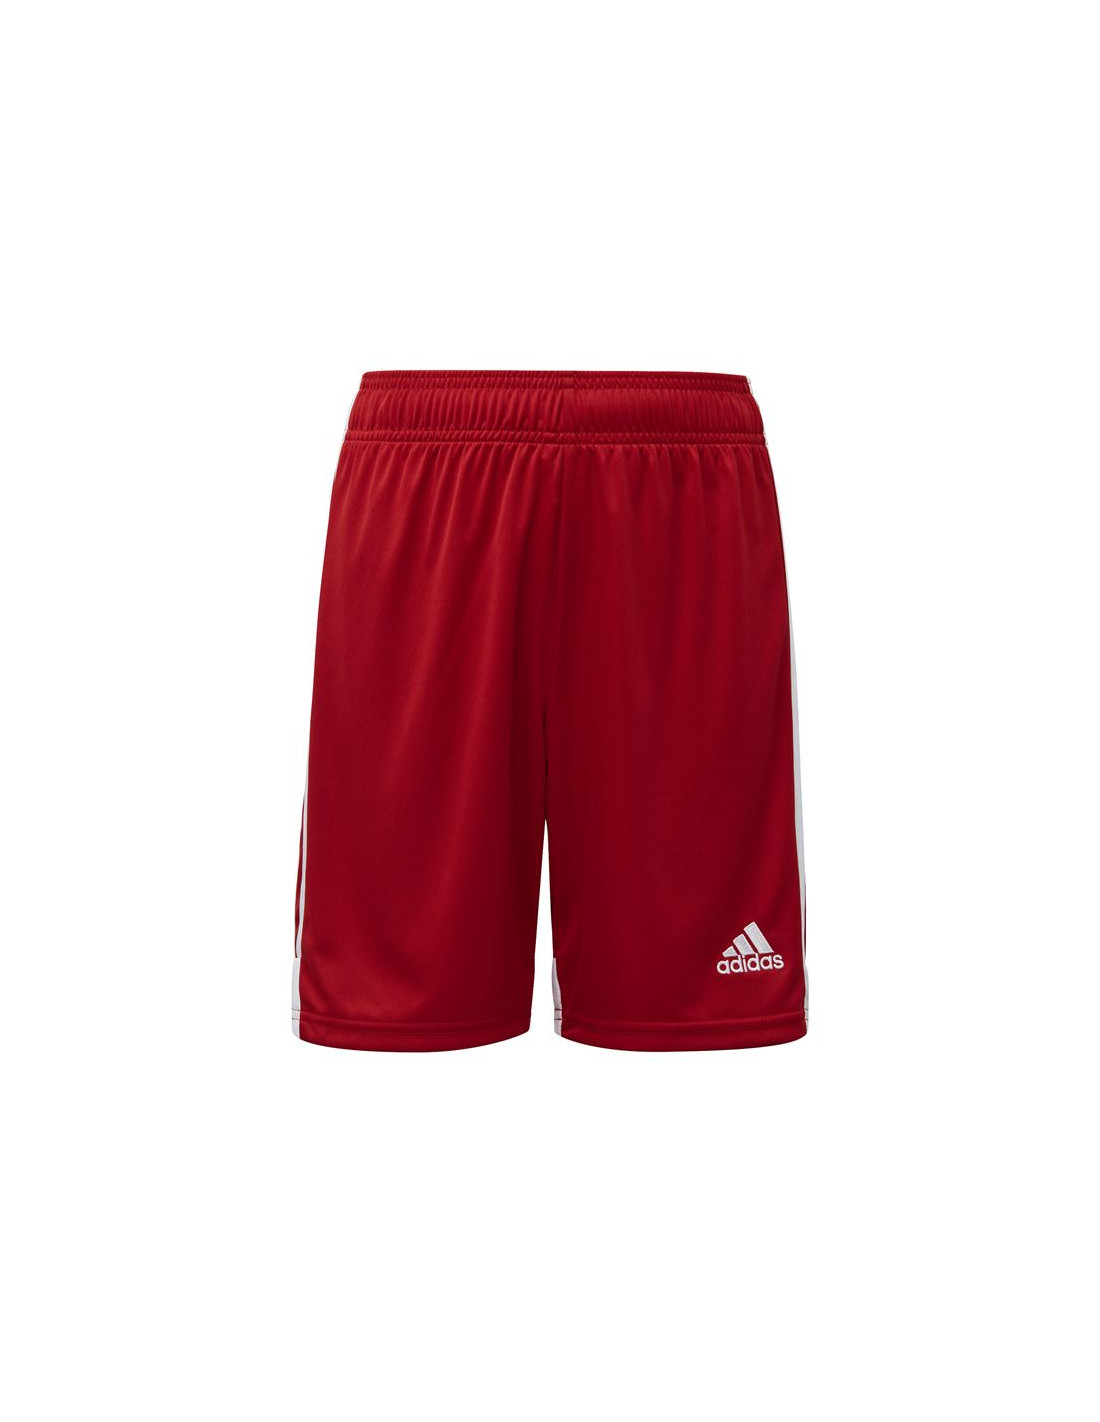 Pantalones cortos de fútbol adidas tastigo 19 kids power red